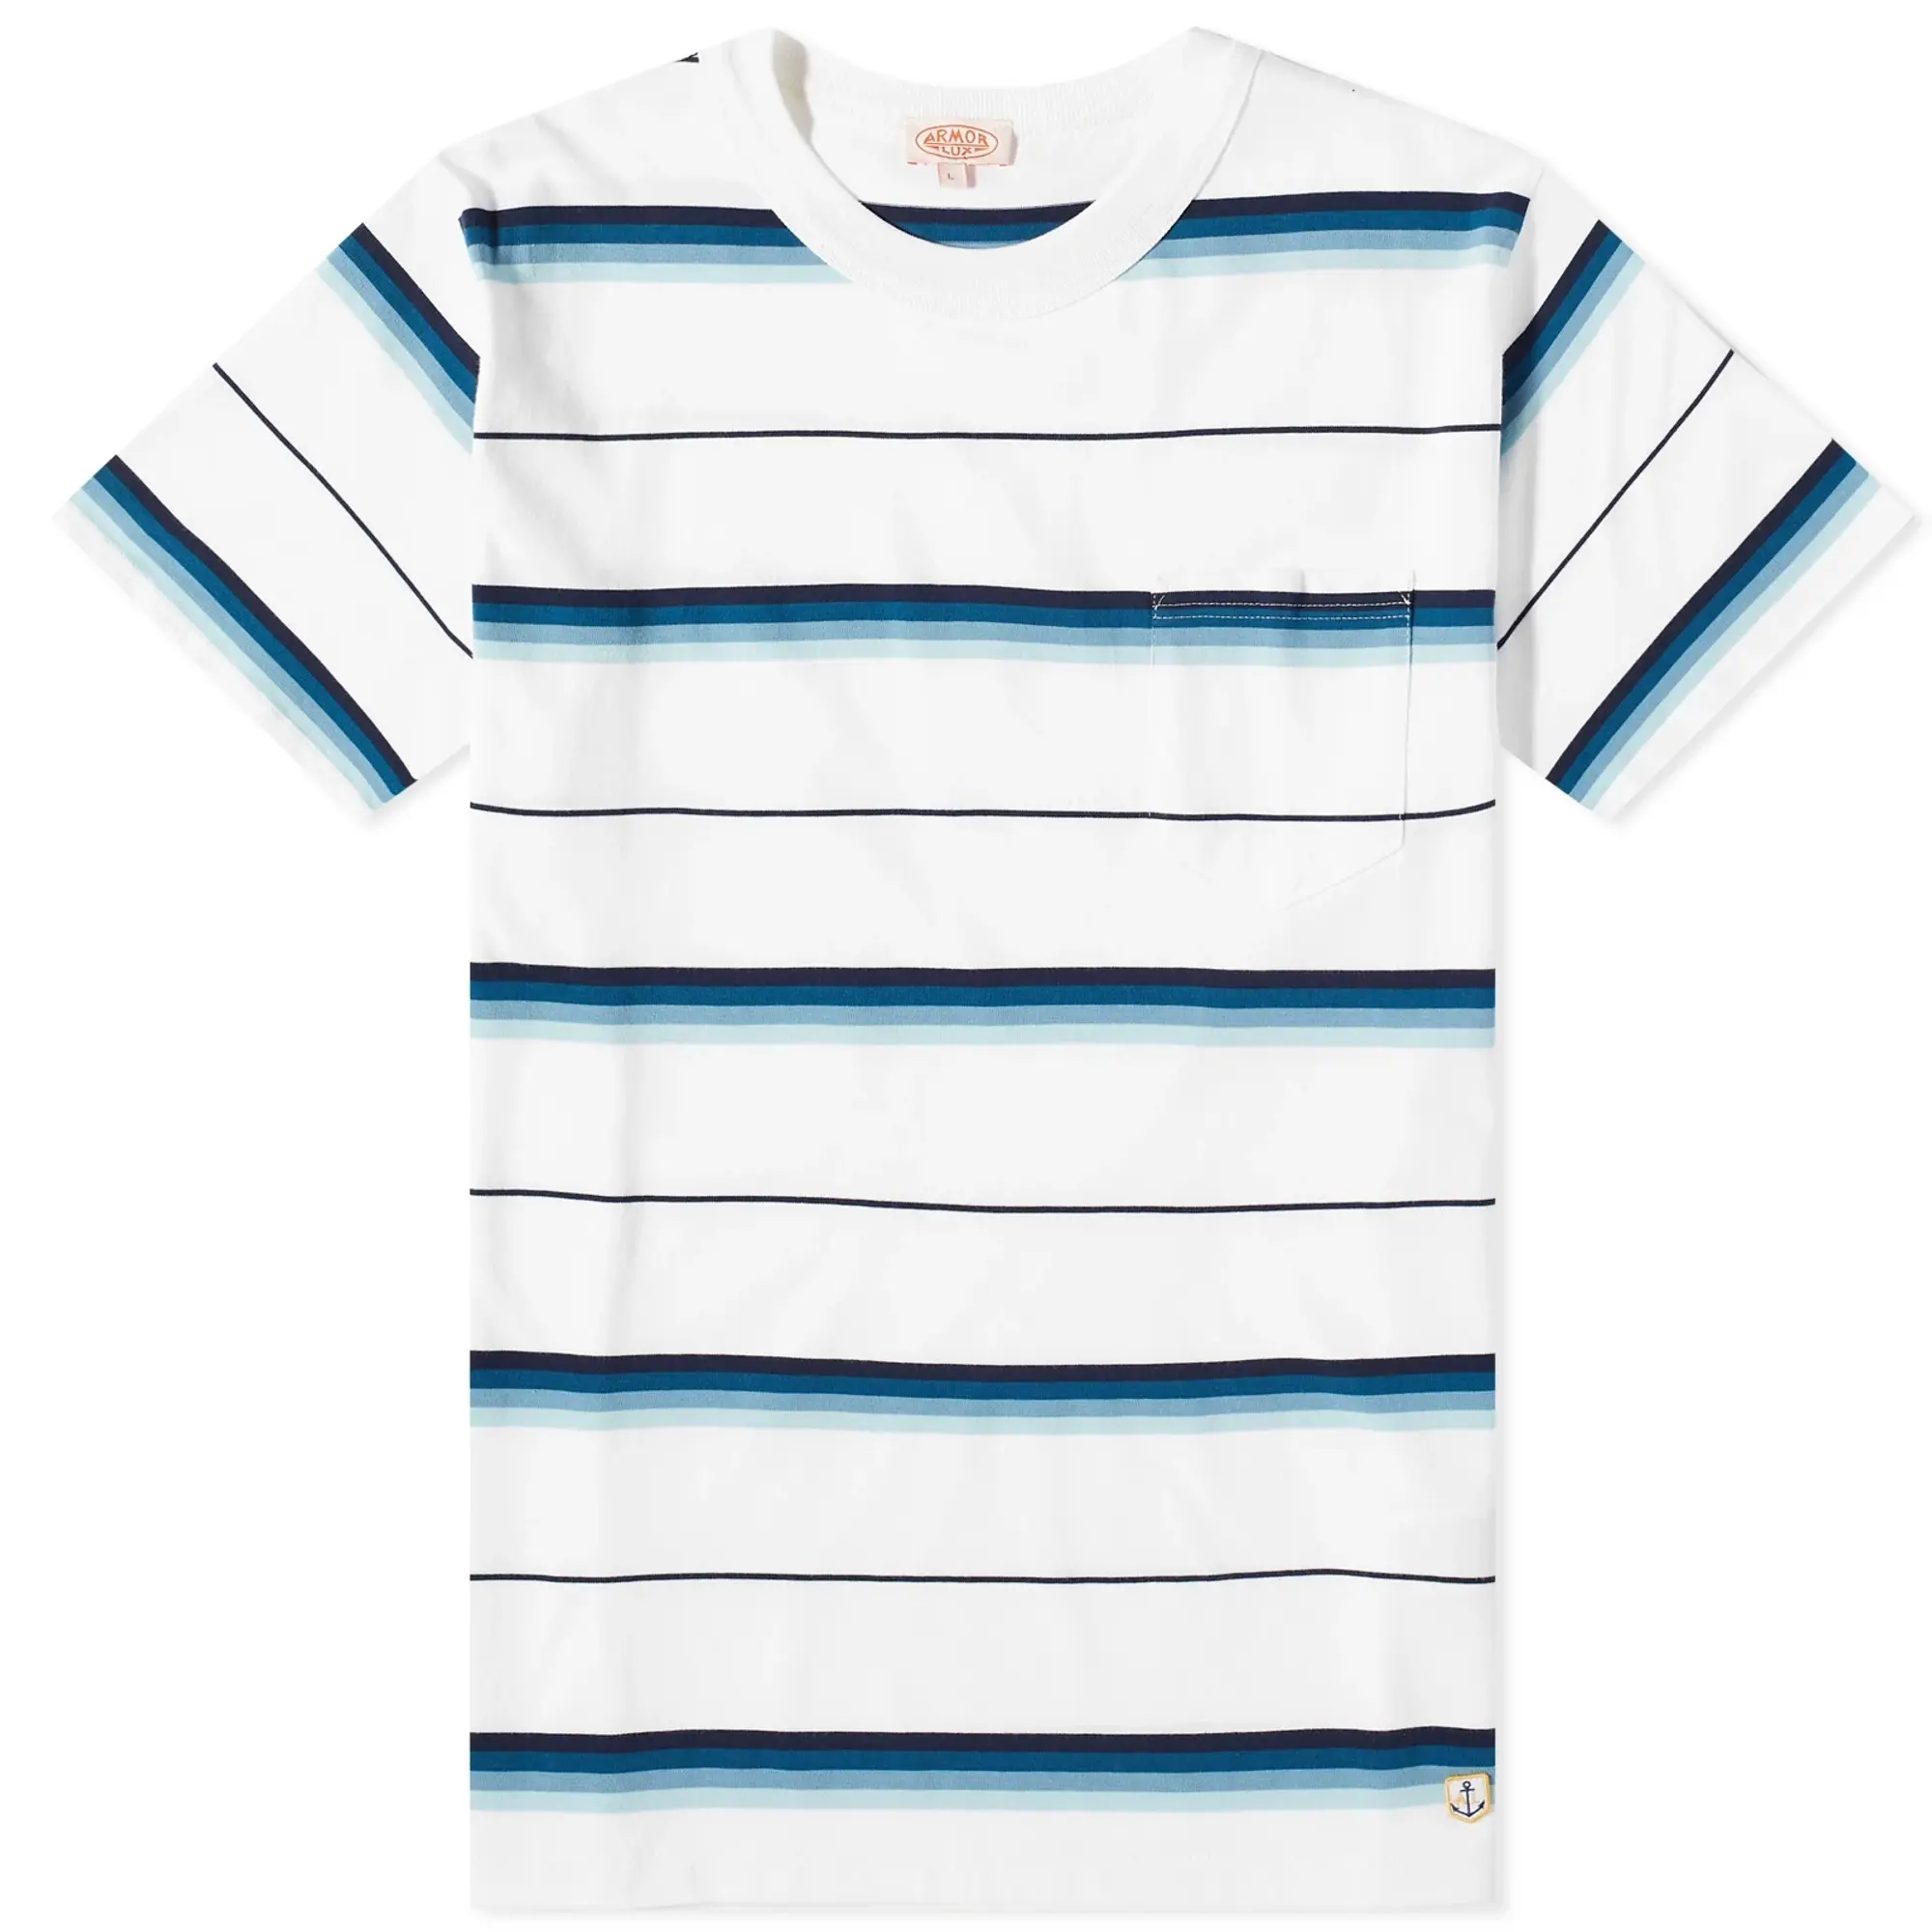 Armor-Lux Men's Stripe T-Shirt White/Blue/Navy